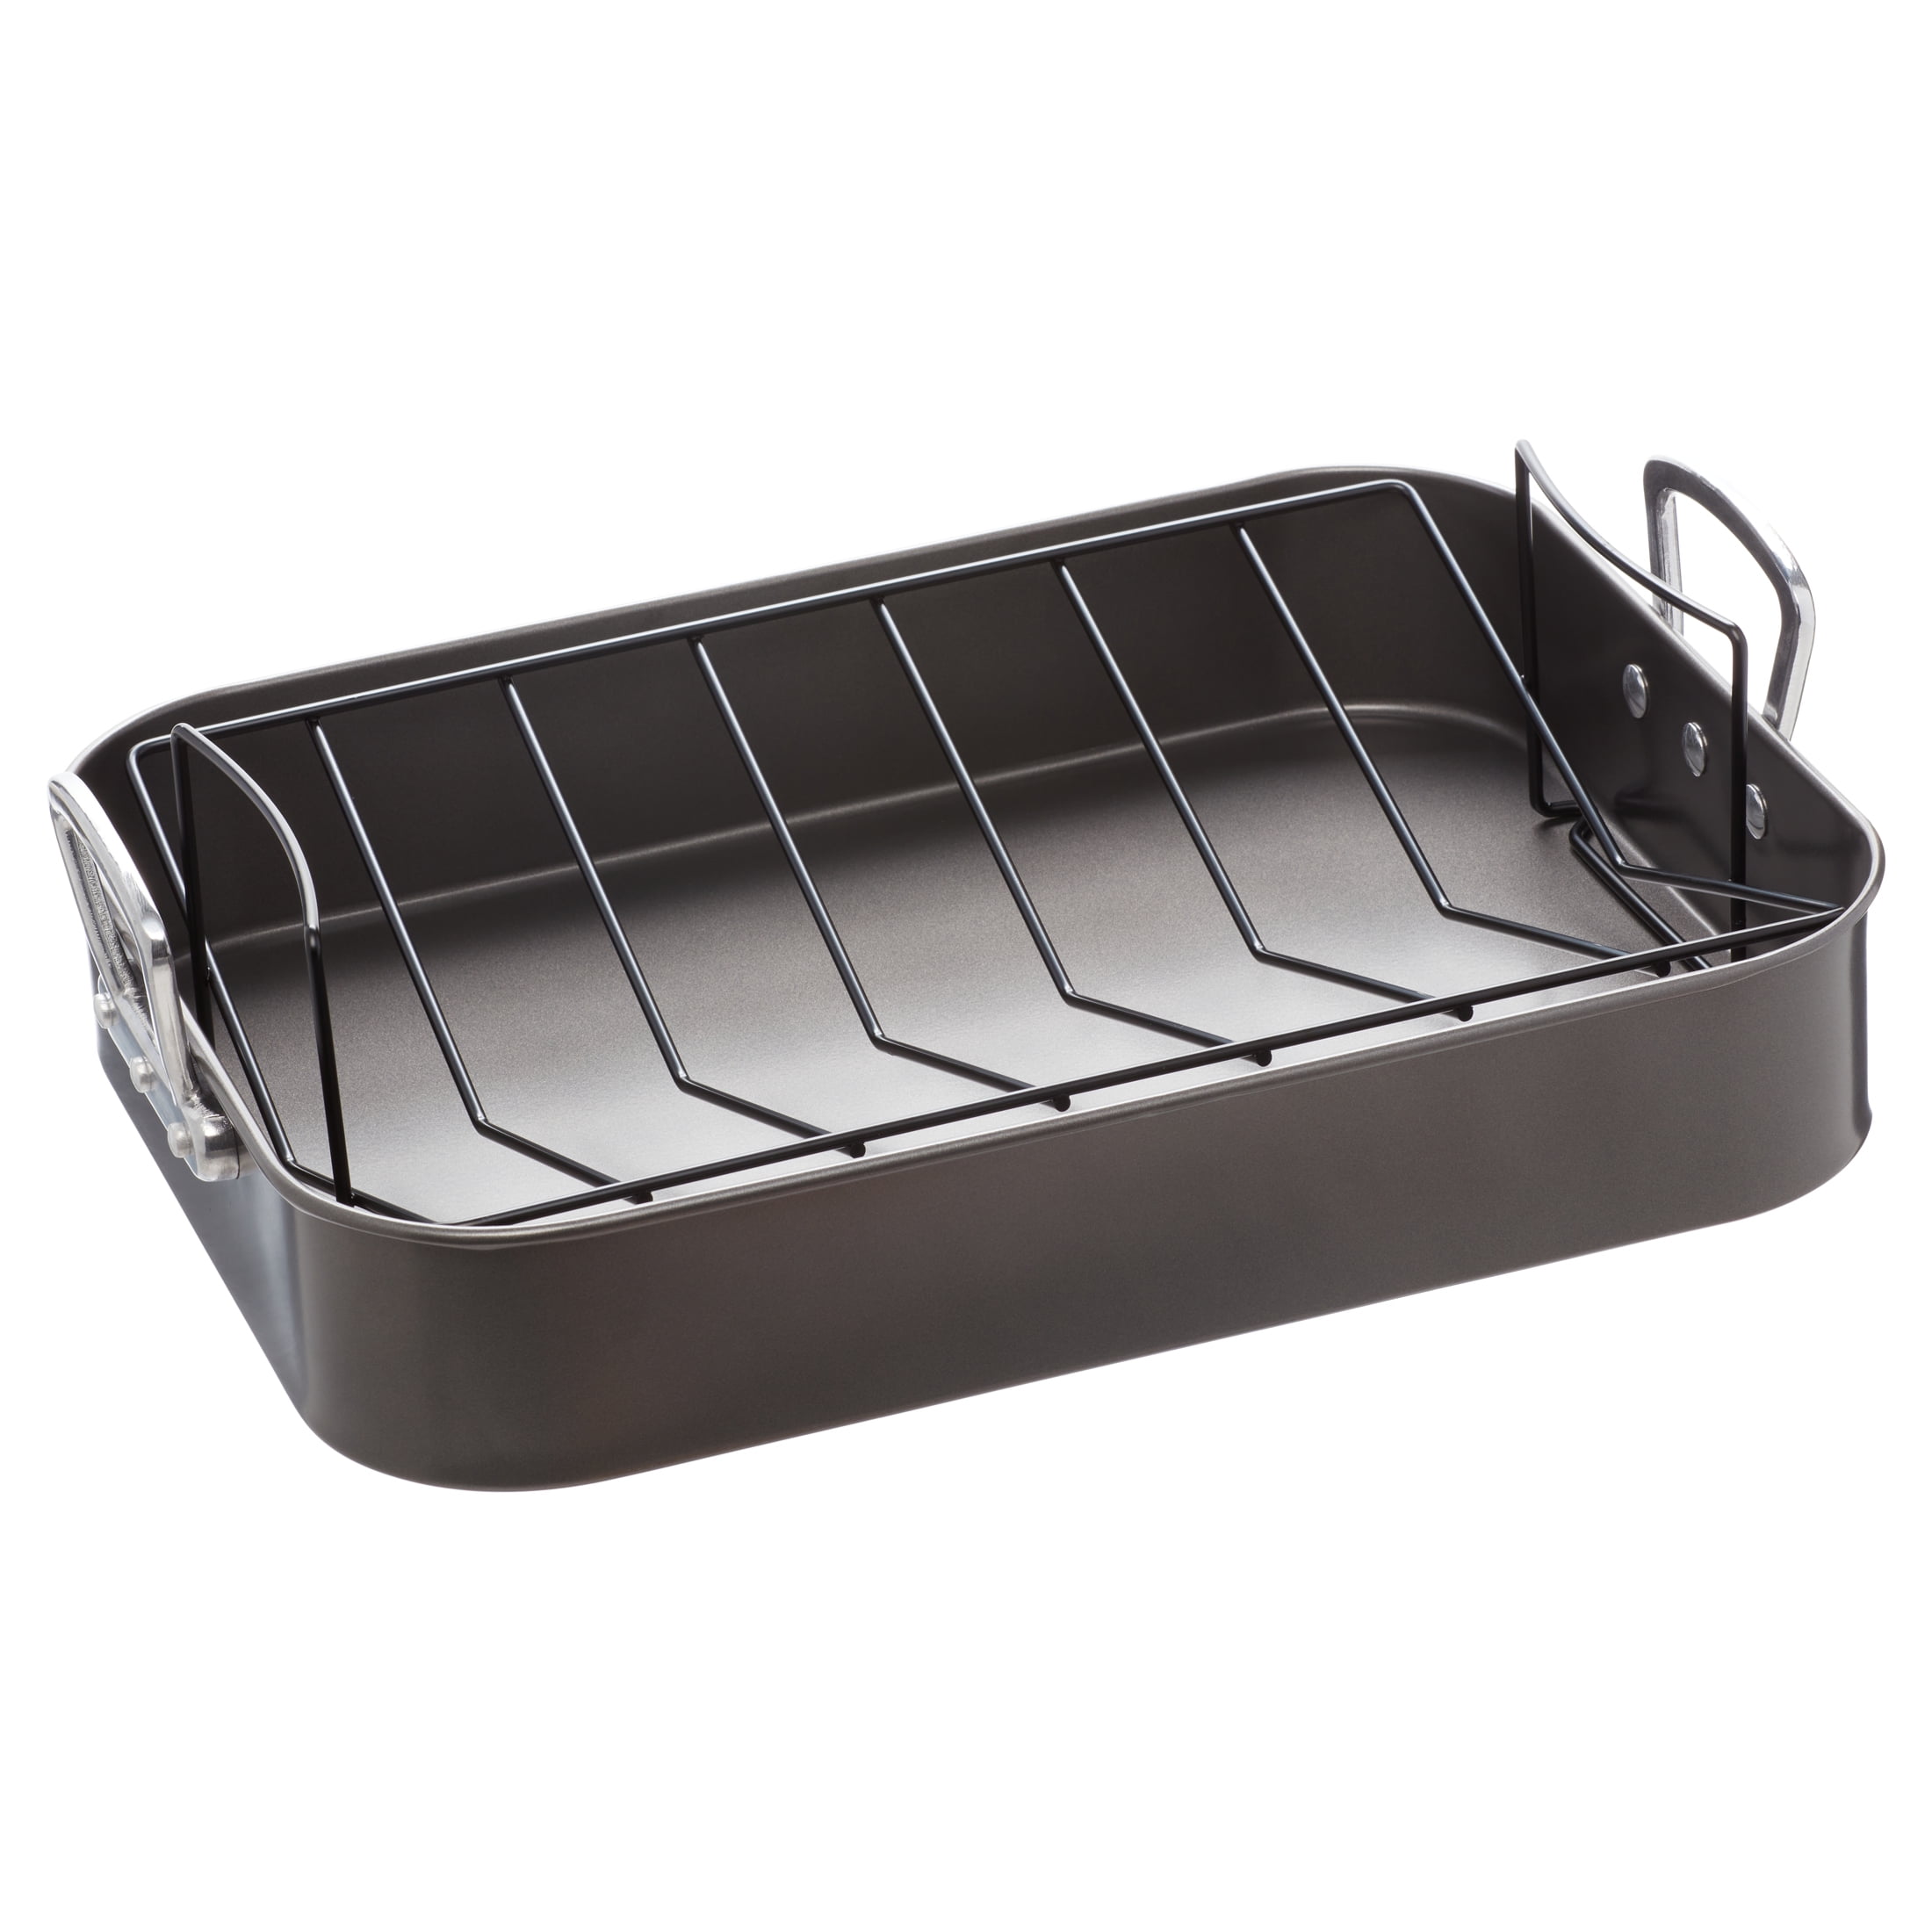 Kaiserhoff Carbon Steel Non-Stick Rectangular Baking Roasting Roaster Pan Tray 